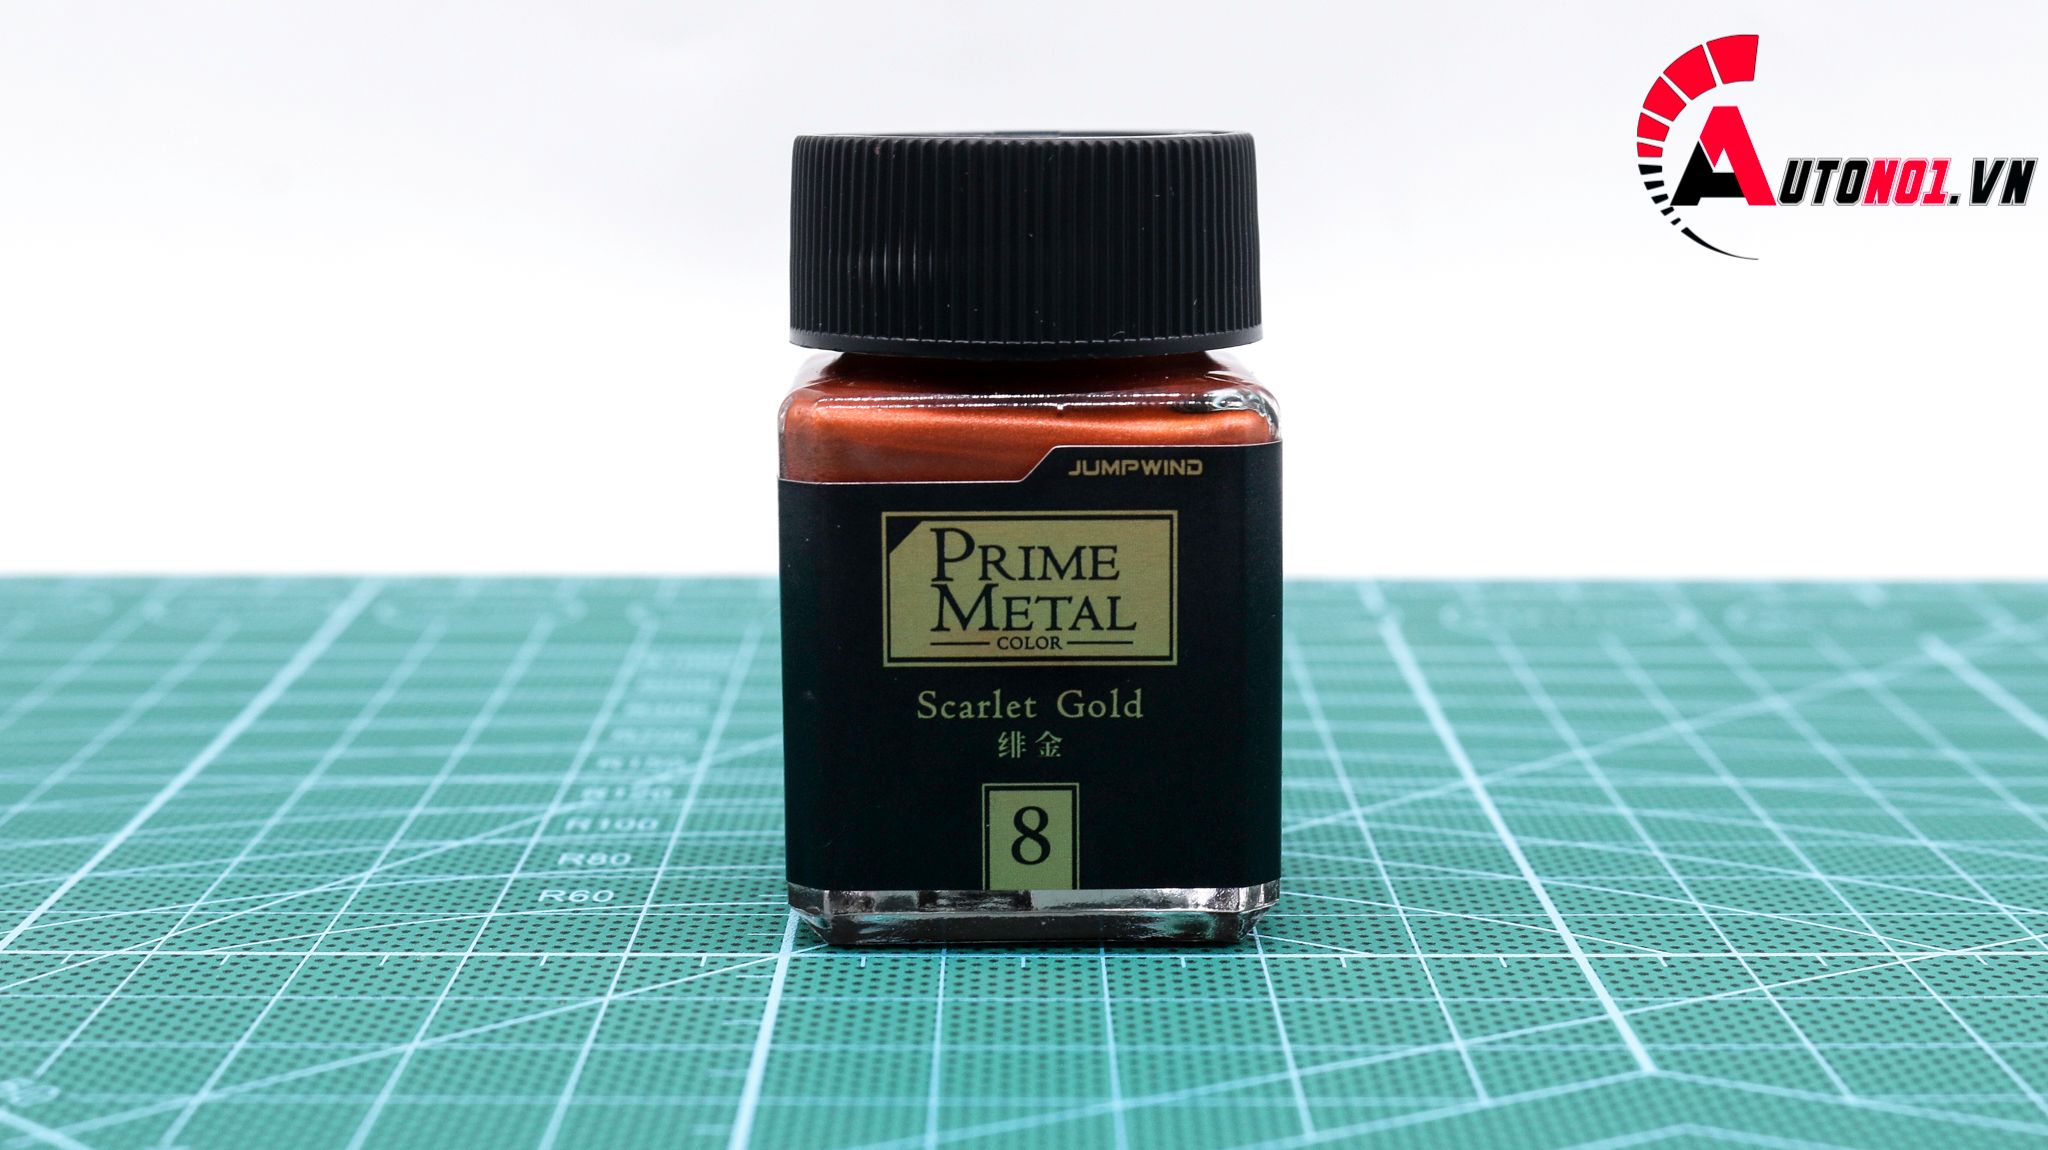  Lacquer pm08 scarlet gold - prime metal sơn mô hình màu đỏ ánh kim Jumpwind s139 